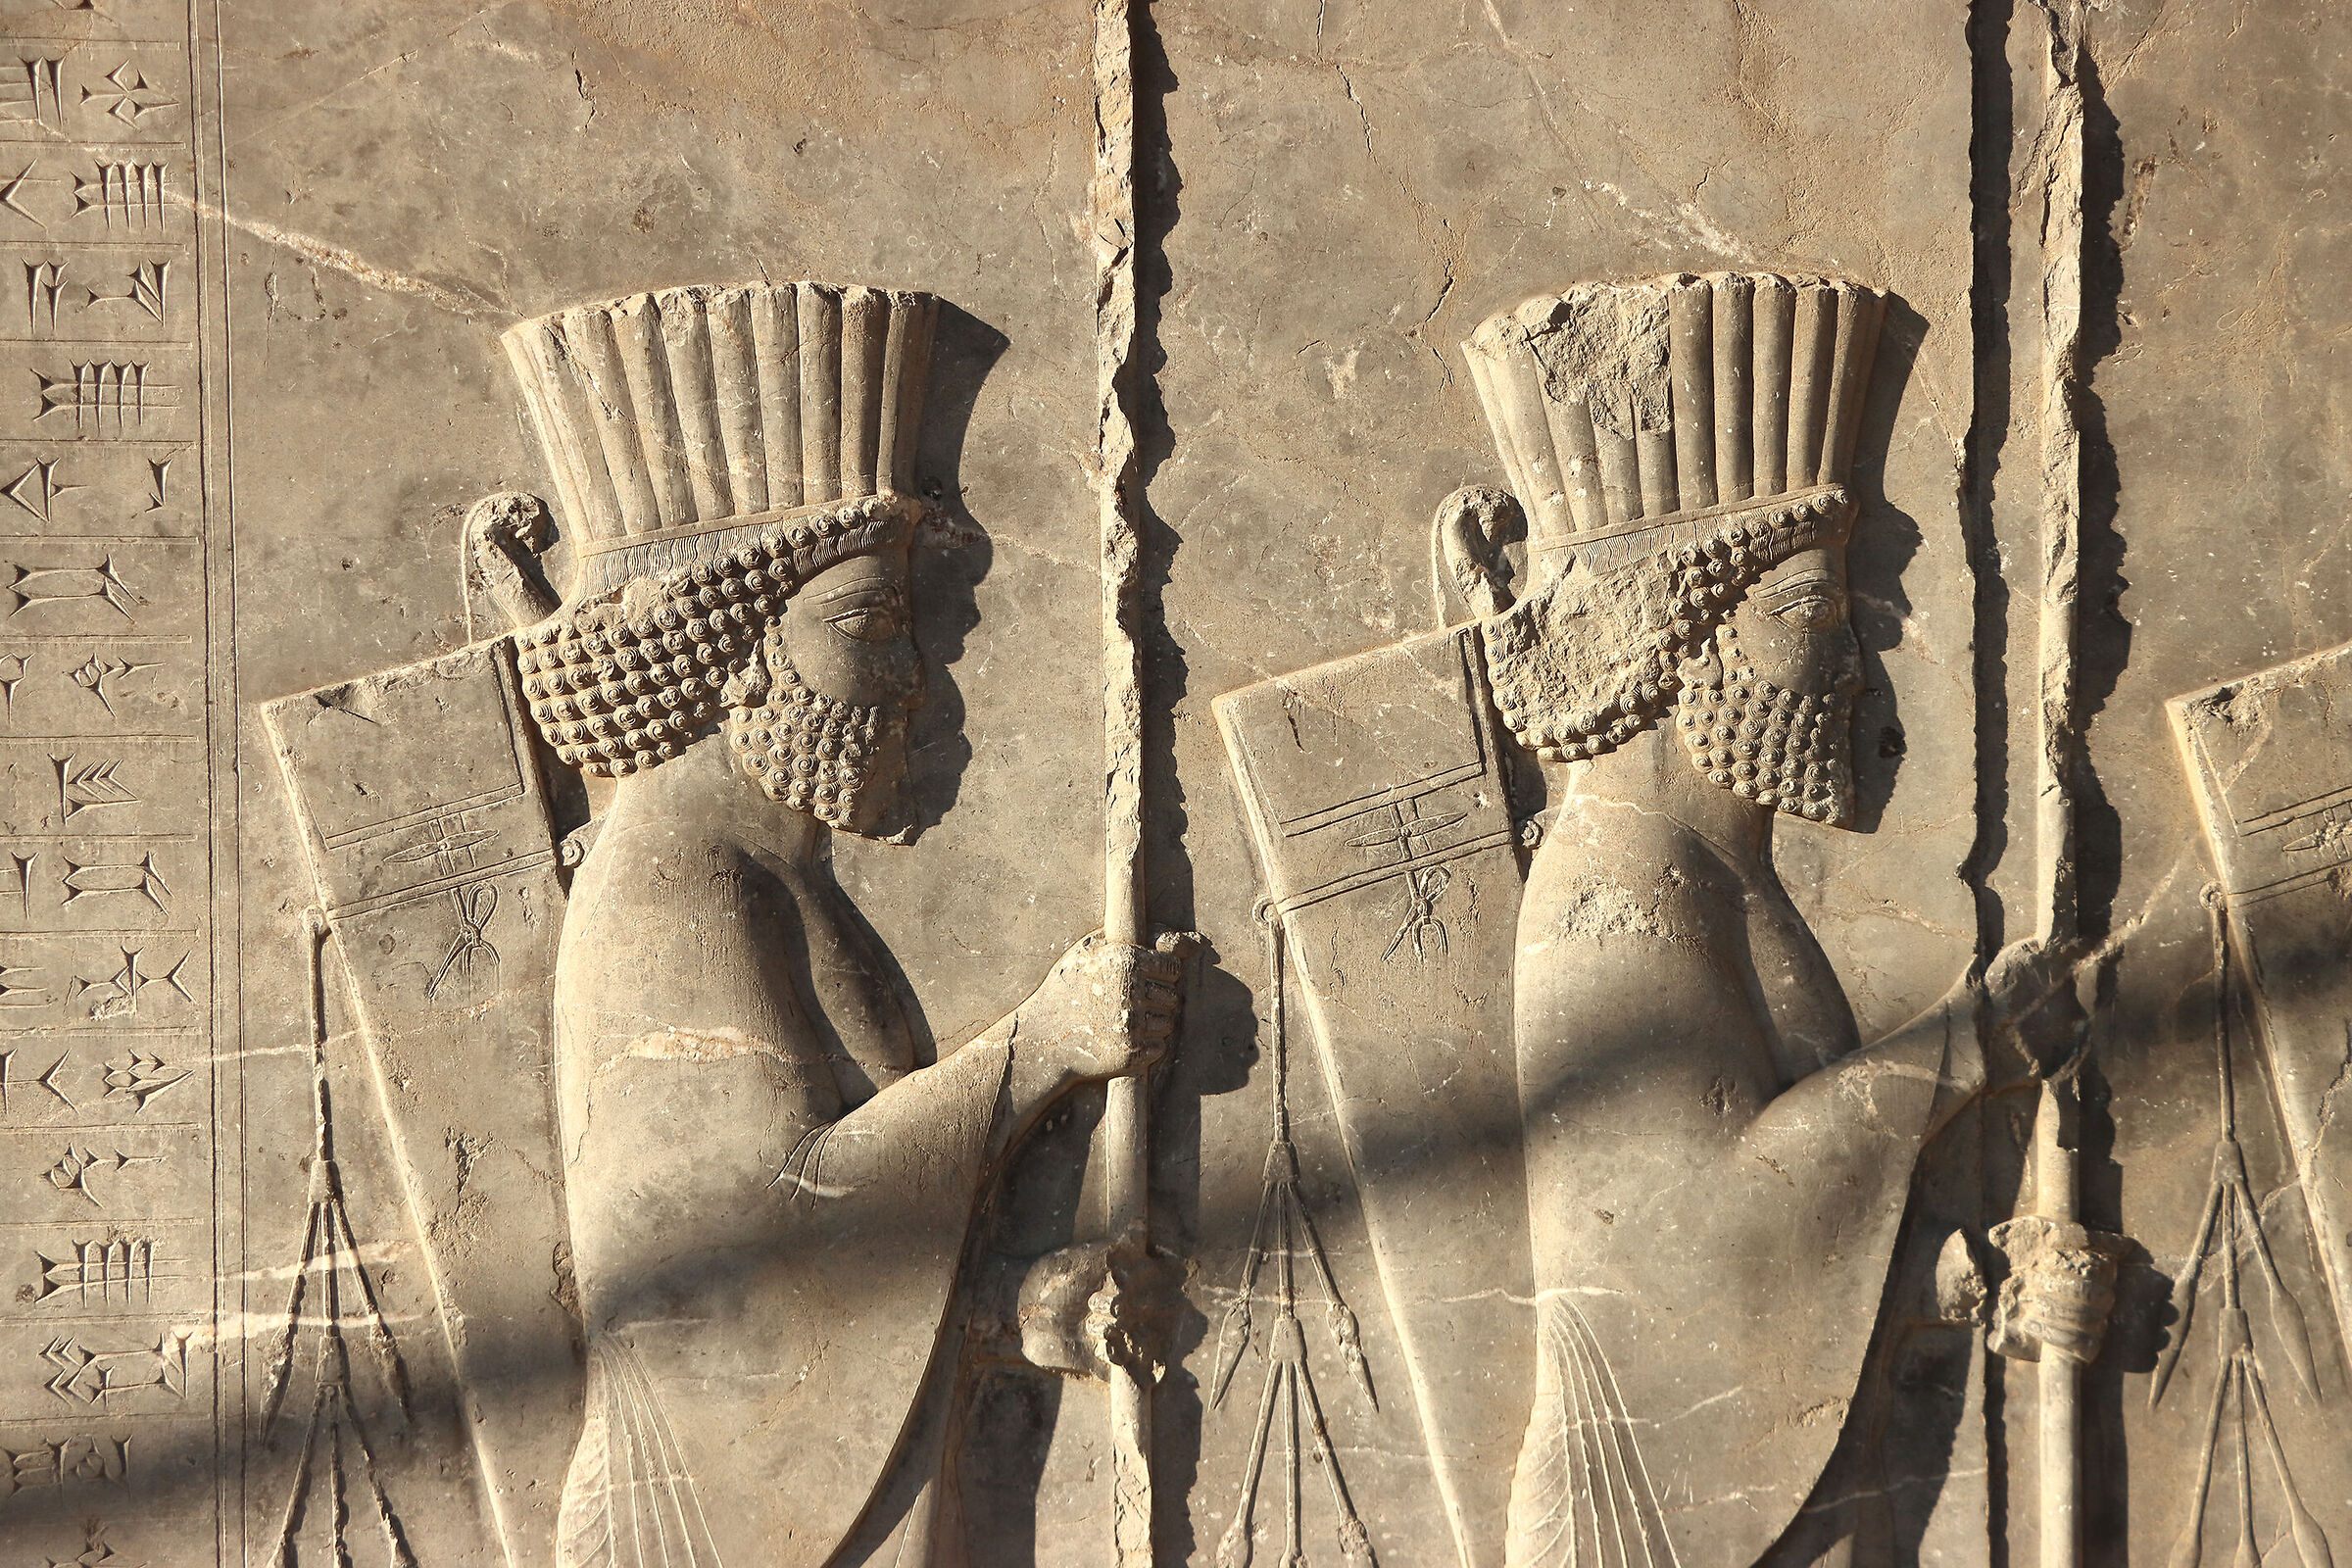 Persepolis...